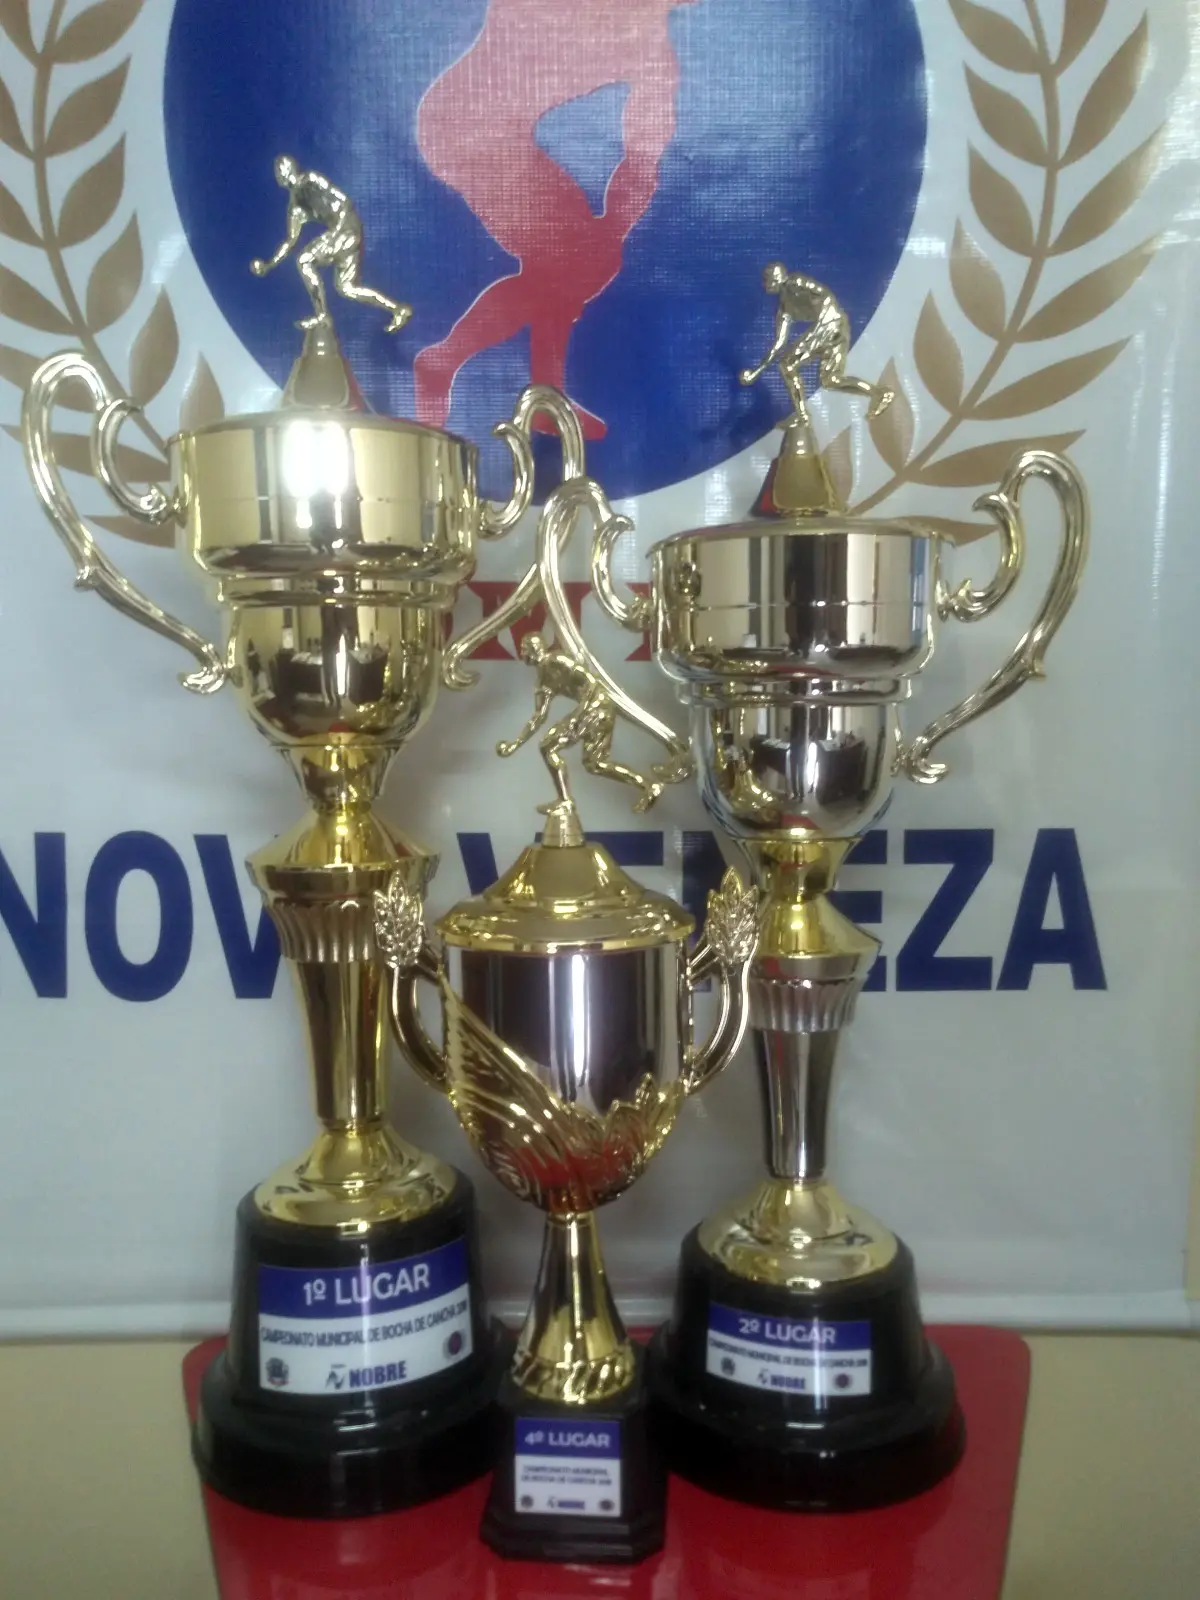 Jogos das semifinais do Campeonato Municipal de Bocha, Taça: “Fundição Nobre” acontecem nesta semana